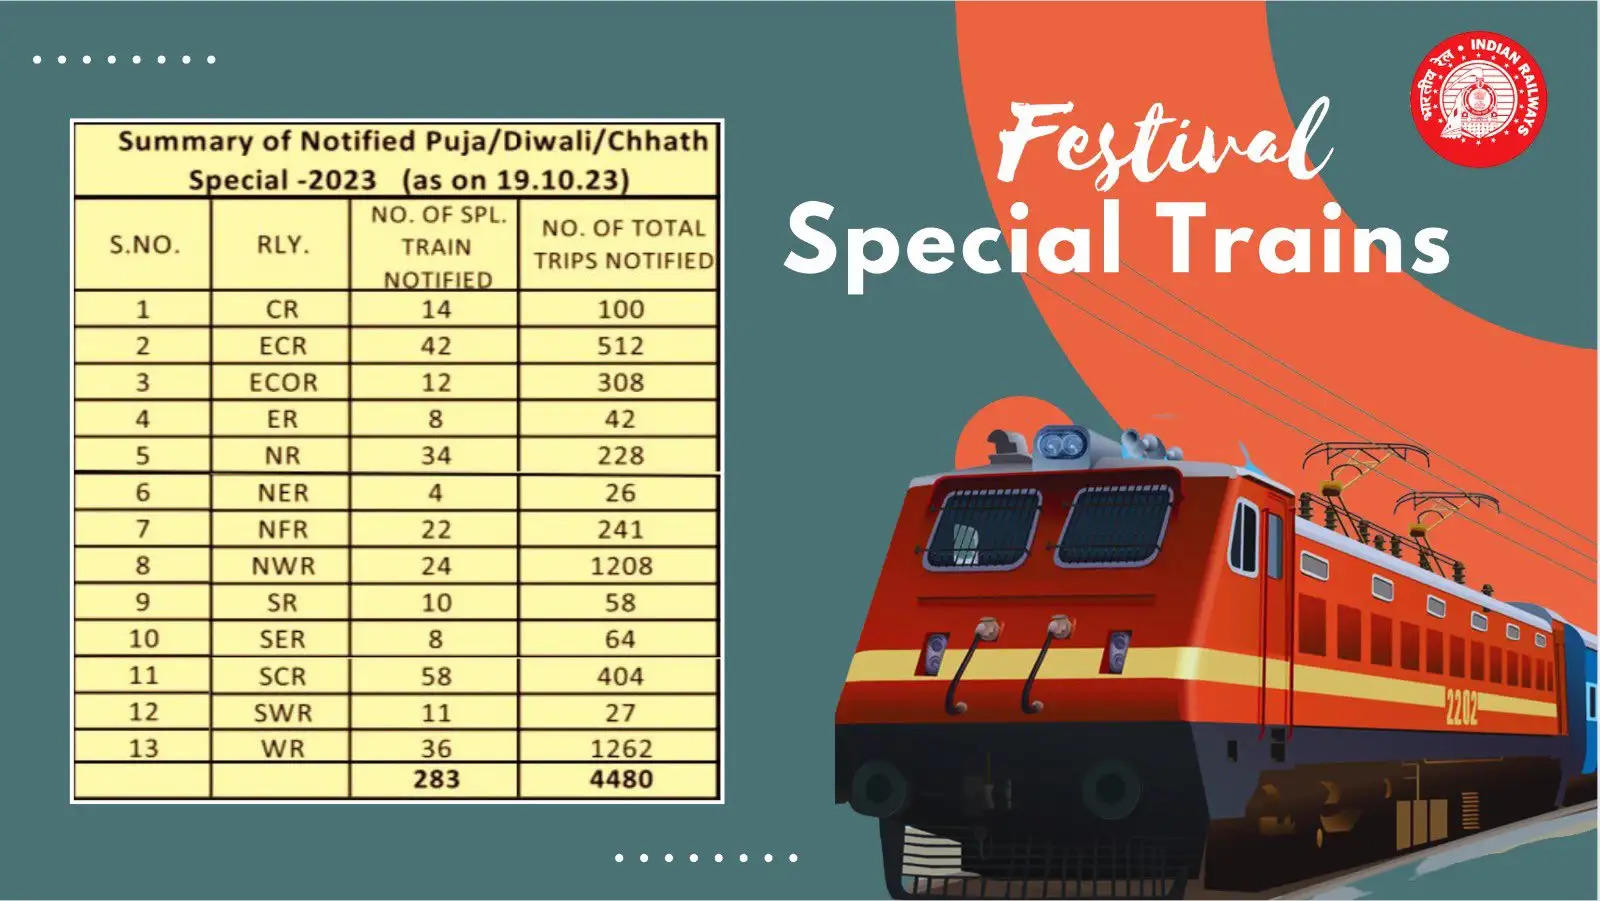   रेलवे त्योहारी सीजन में 283 विशेष ट्रेनों से 4,480 यात्राएं करेगा संचालित